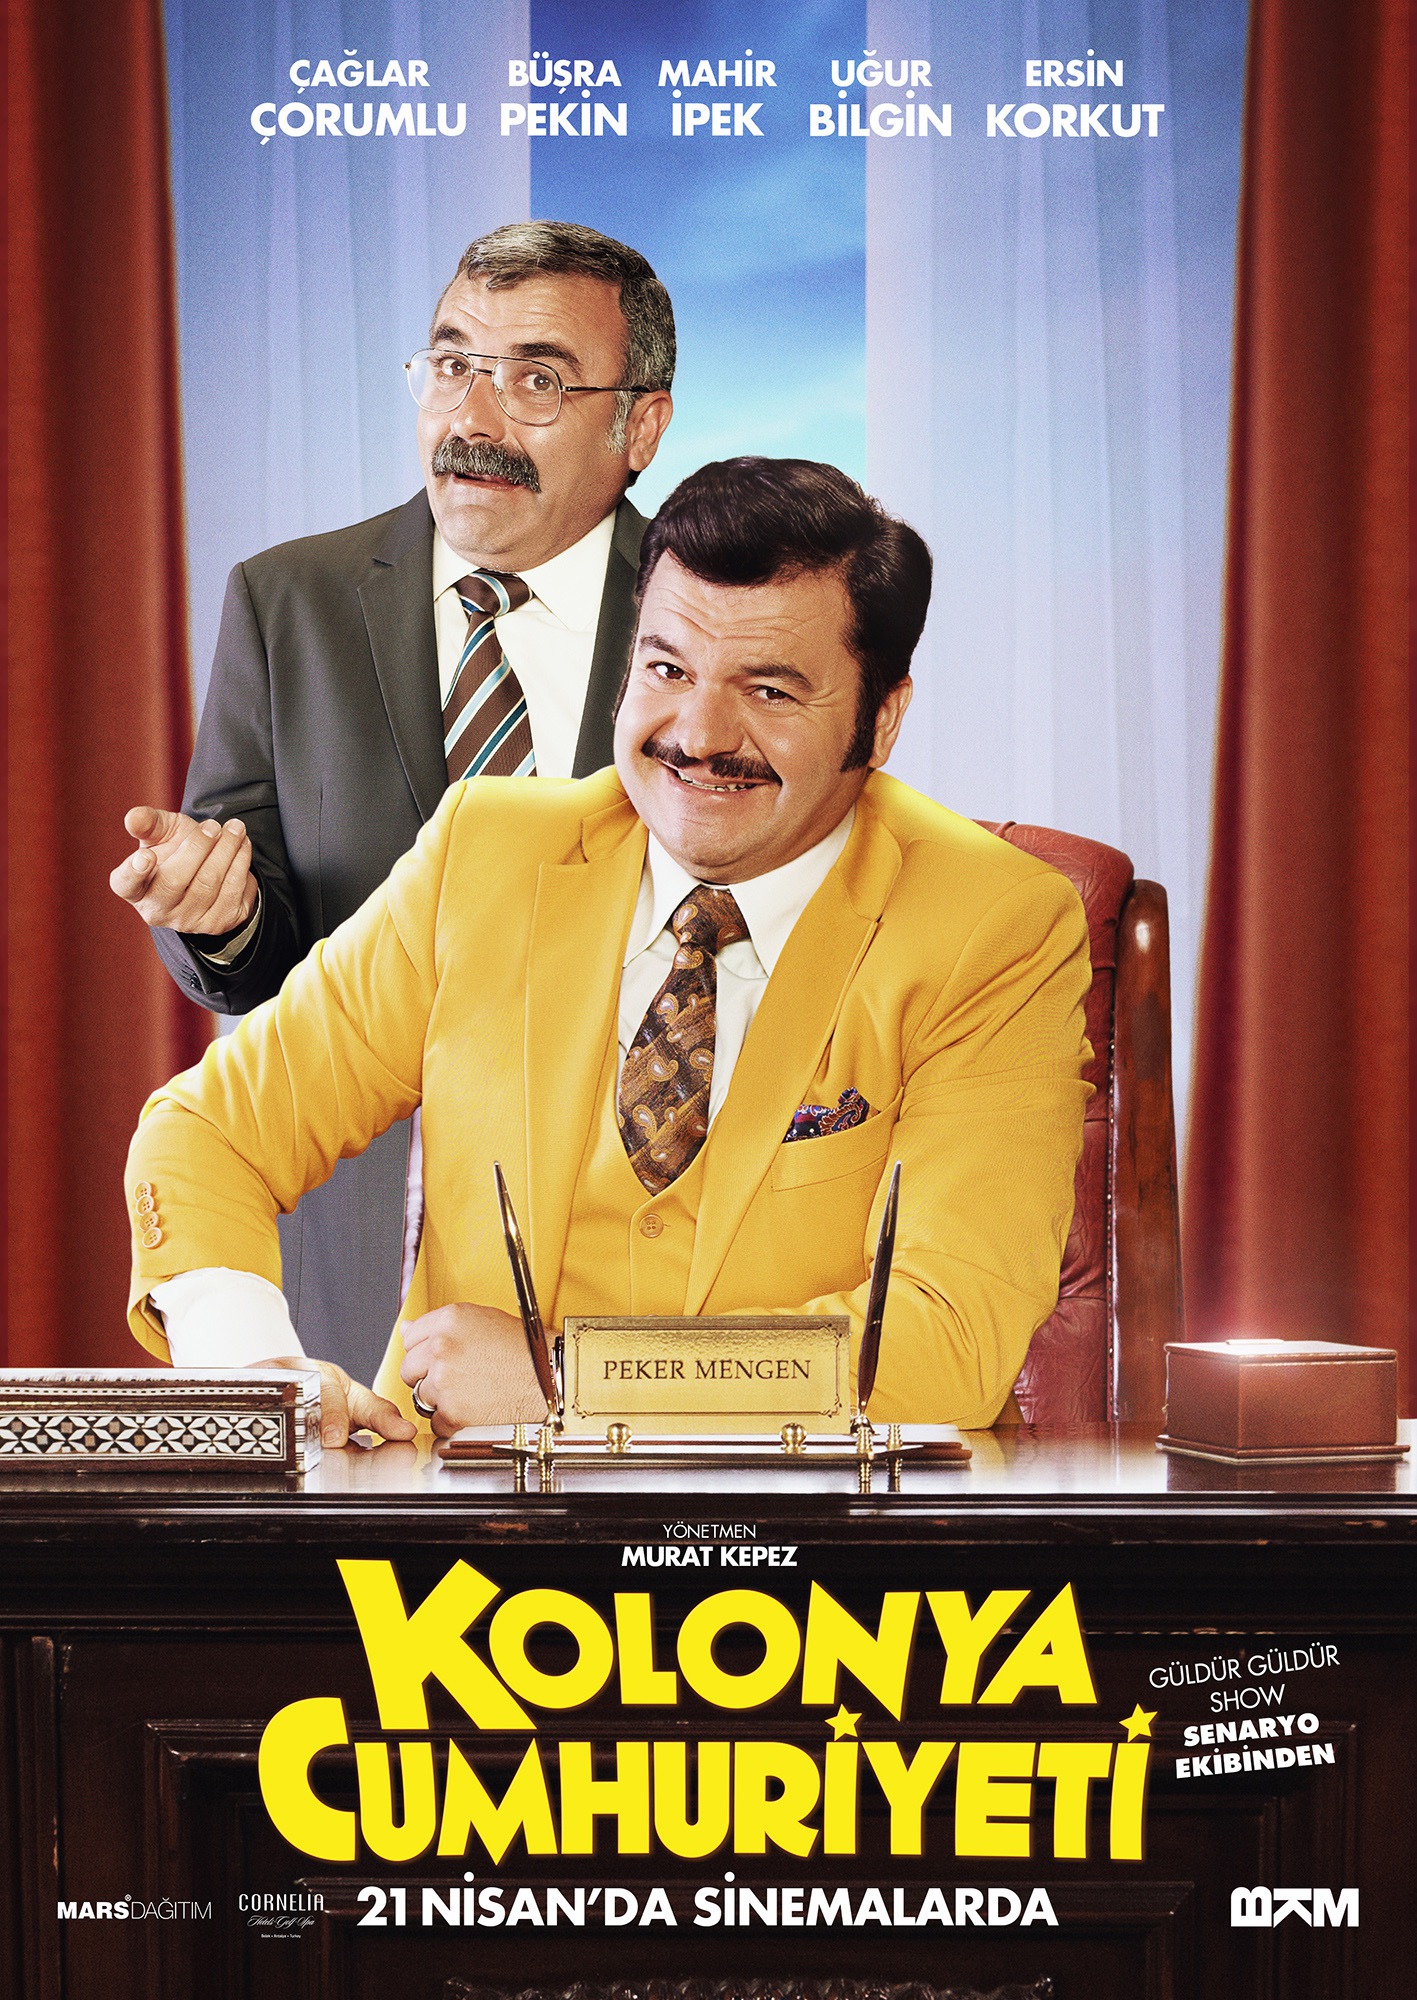 Mega Sized Movie Poster Image for Kolonya Cumhuriyeti (#4 of 7)